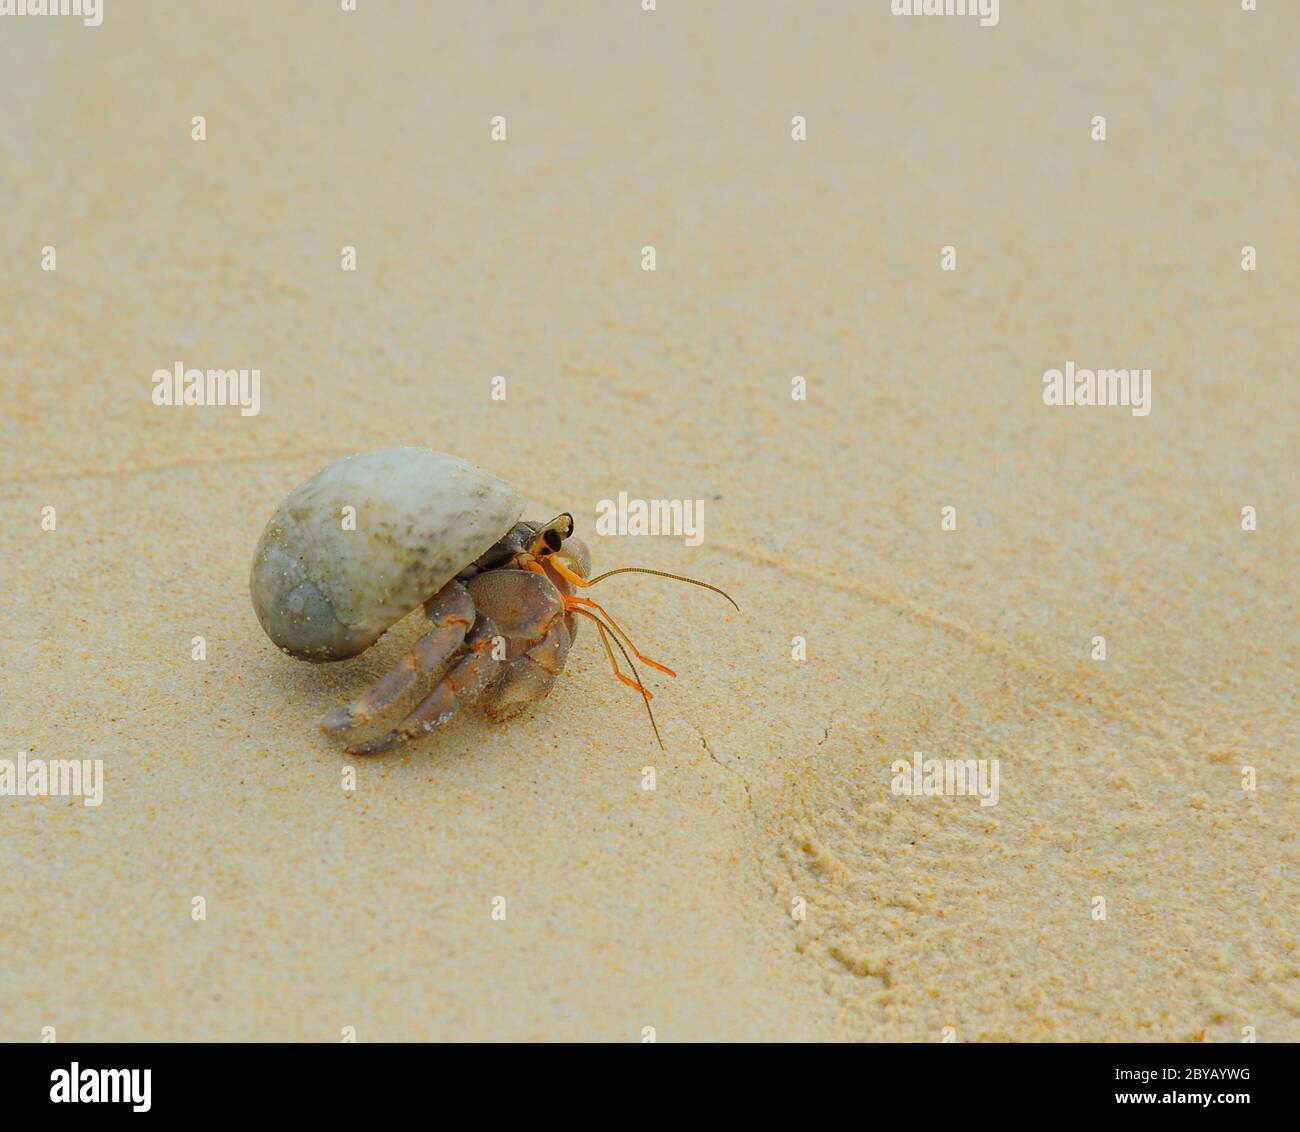 Cangrejo de arena fantasma fotografías e imágenes de alta resolución -  Página 10 - Alamy